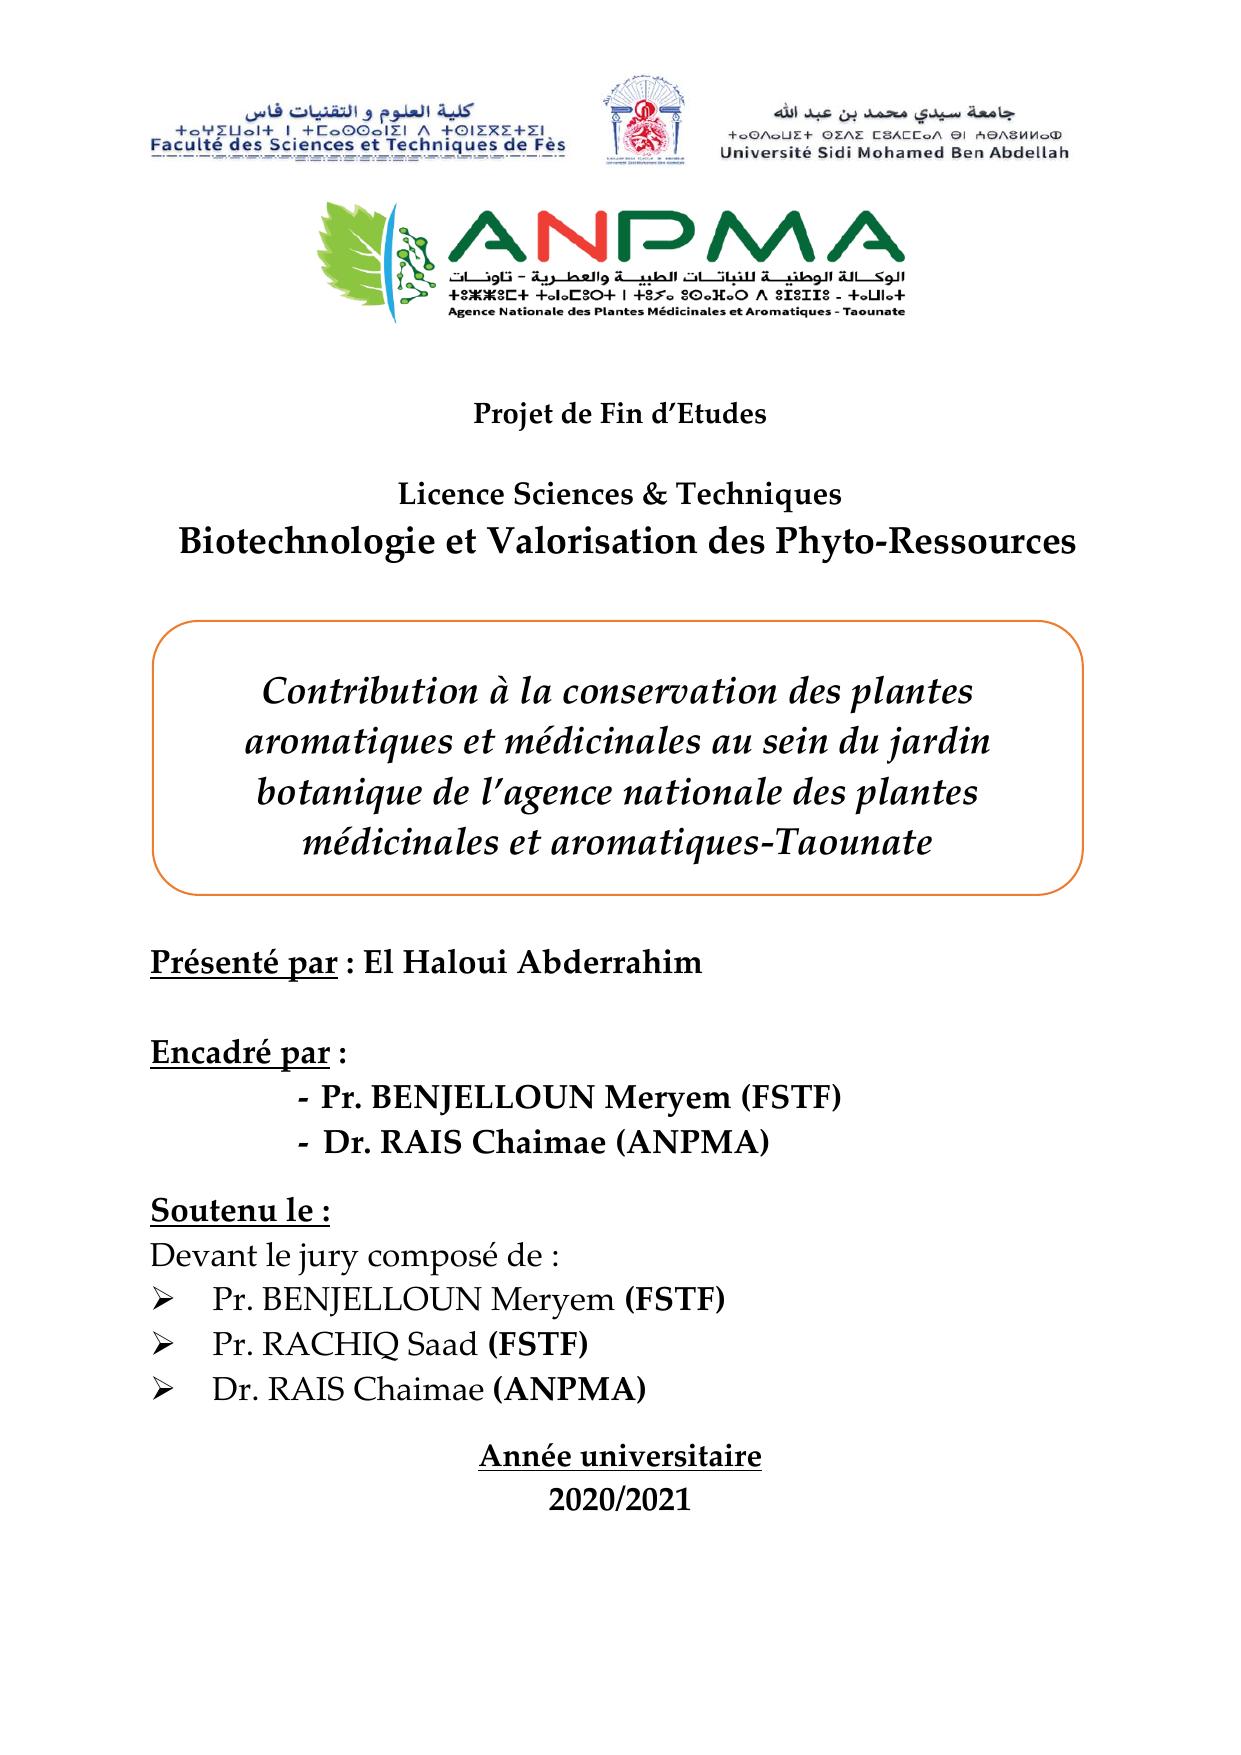 Contribution à la conservation des plantes aromatiques et médicinales au sein du jardin botanique de l’a~0 (2)